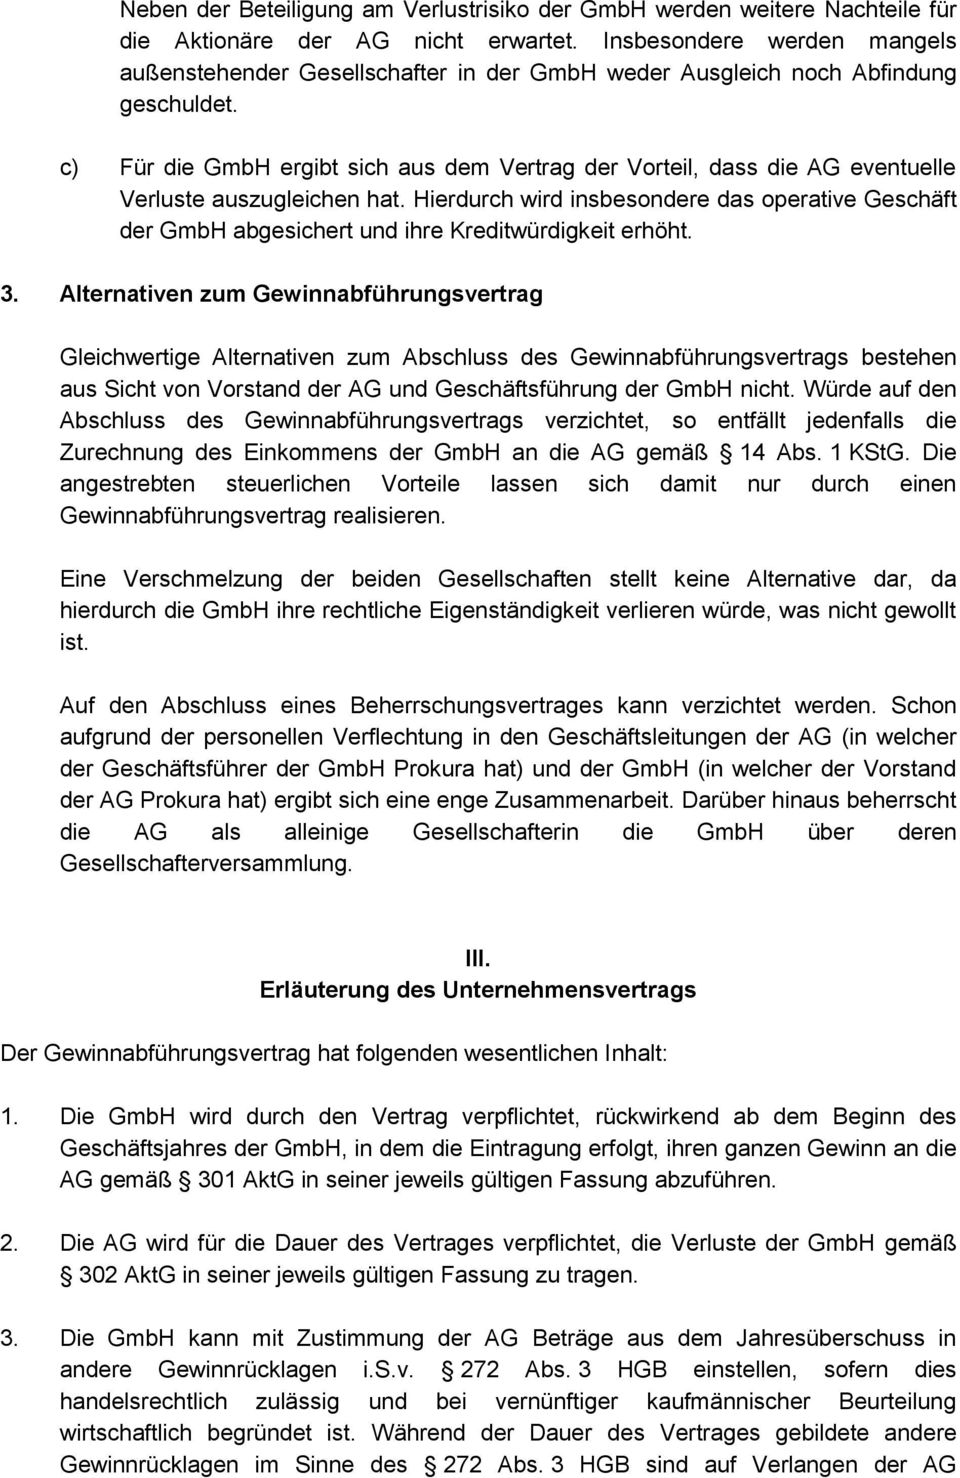 c) Für die GmbH ergibt sich aus dem Vertrag der Vorteil, dass die AG eventuelle Verluste auszugleichen hat.